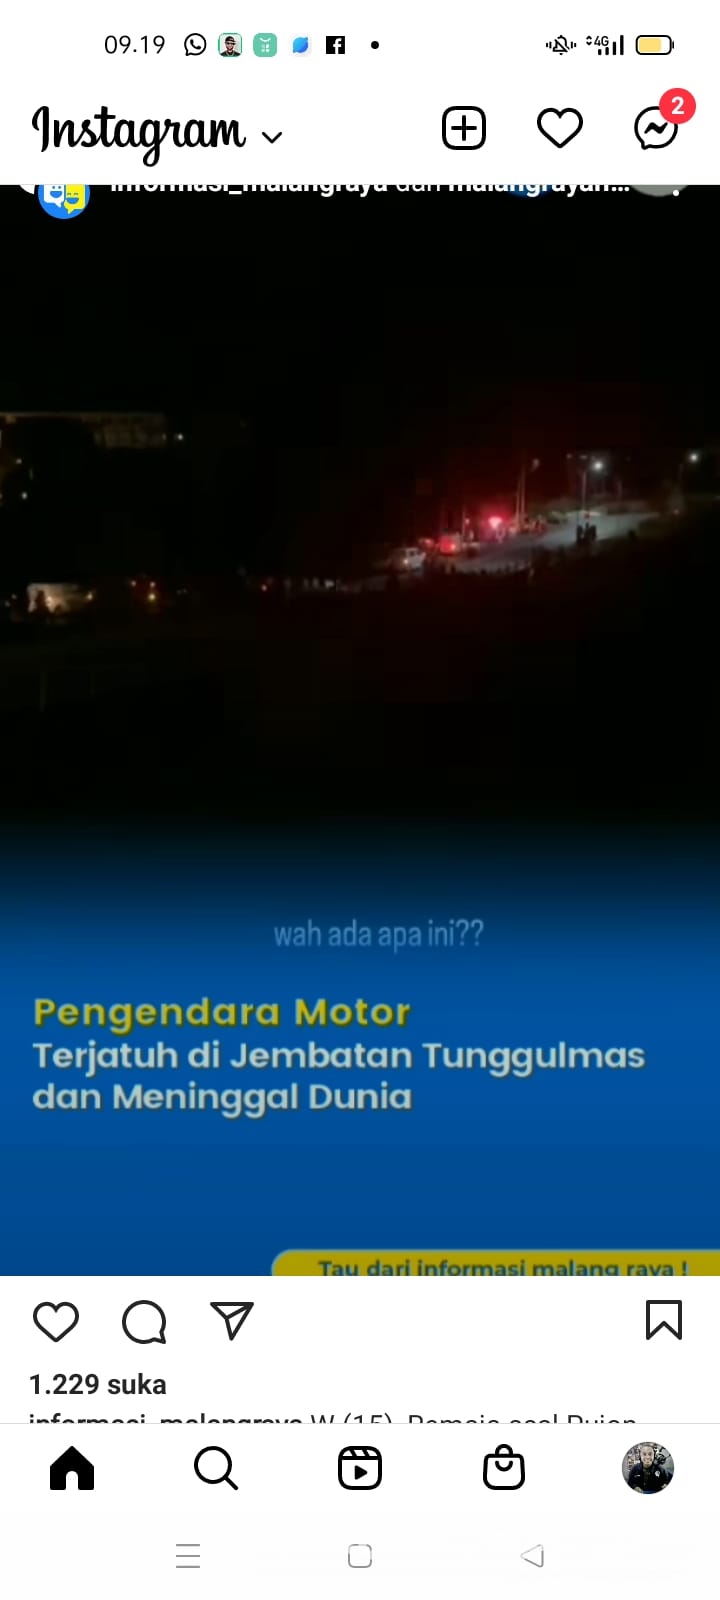 Siswa SMK PGRI 3 Malang Tewas Kecelakaan di Jembatan Tunggulmas